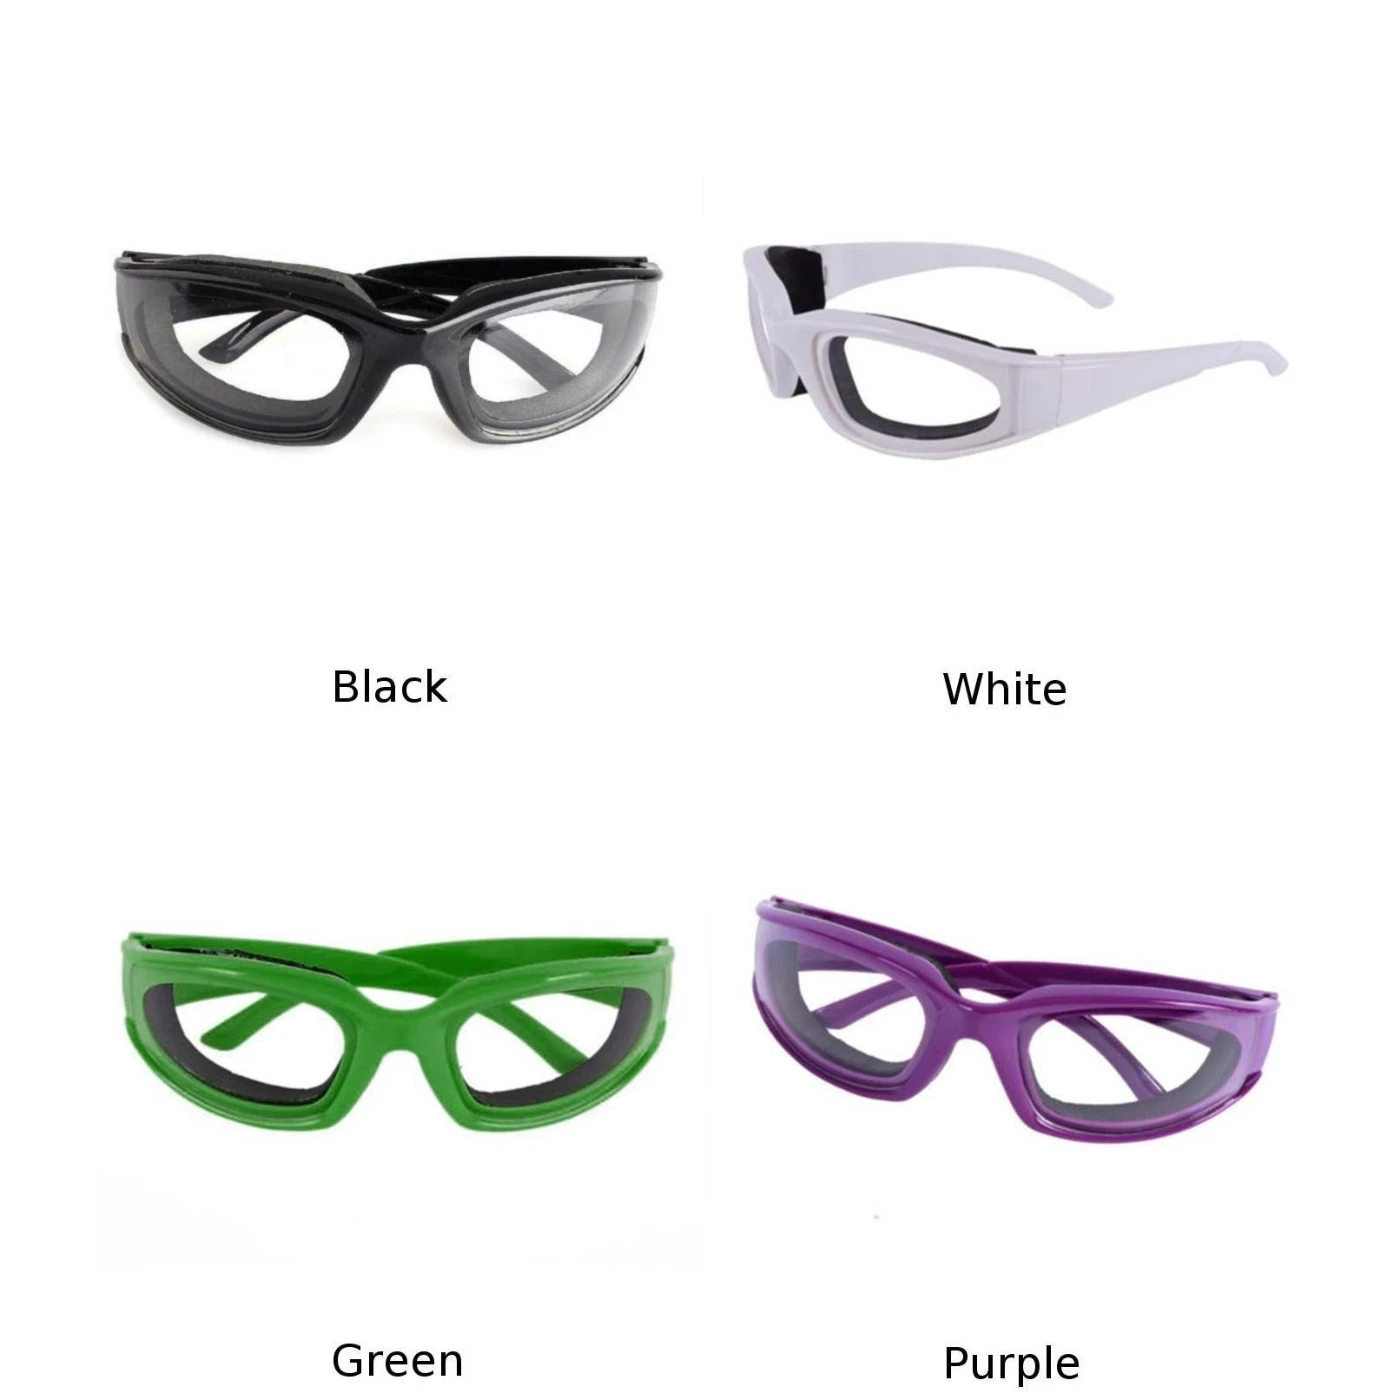 Луковые очки, очки для глаз, луки, разделочные слезы, бесплатный защитный инструмент, Новинка